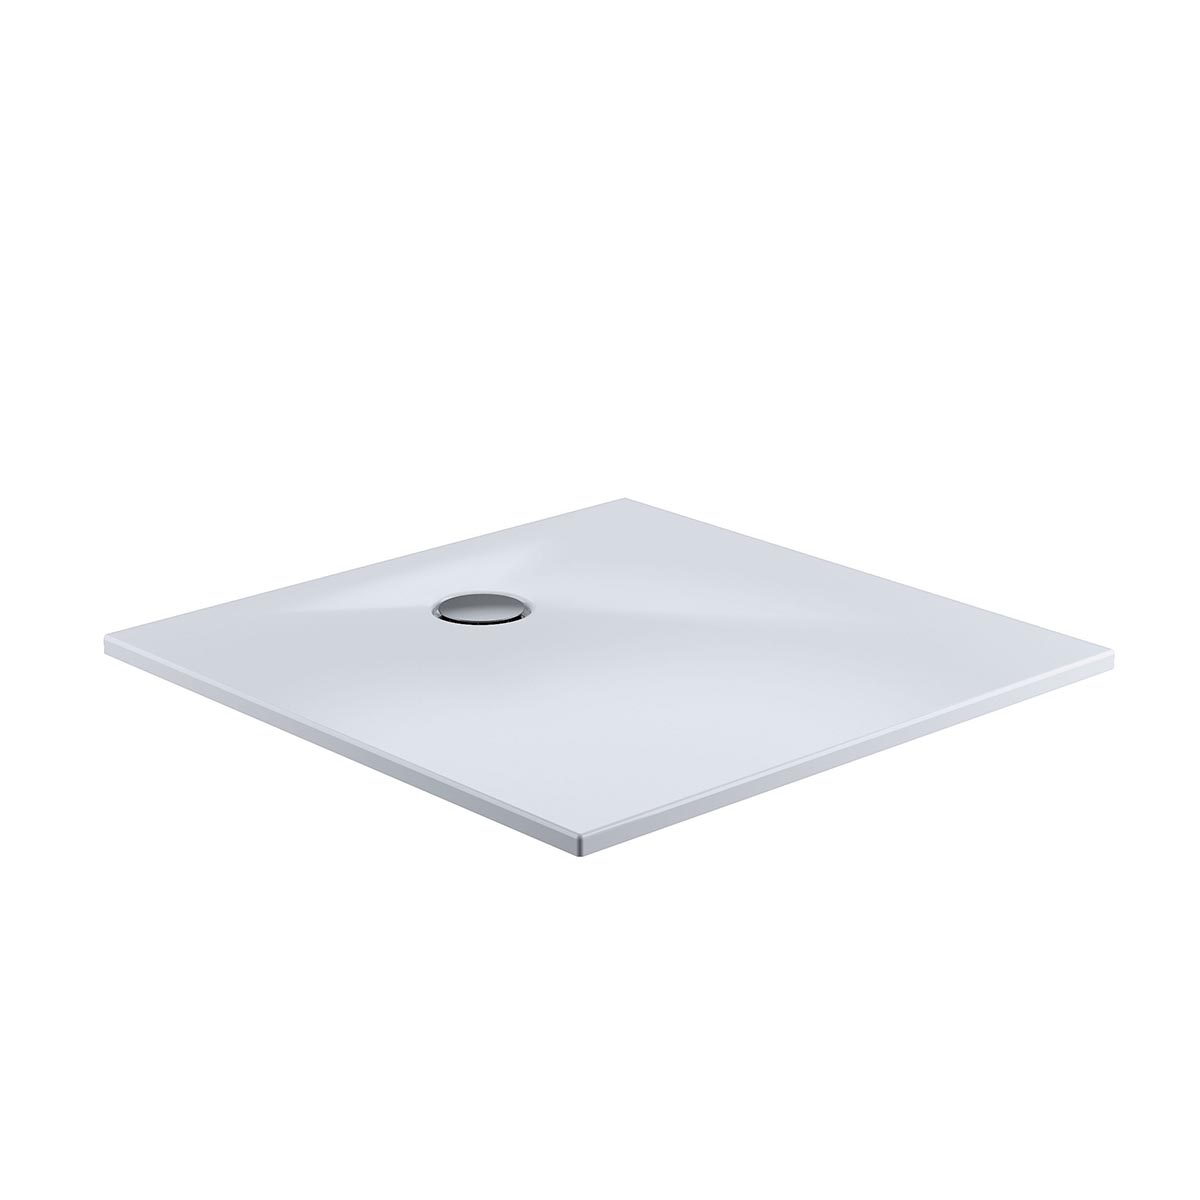 HSK Marmor-Polymer Quadrat Duschwanne plan-Weiß-80 x 80 cm-ohne AntiSlip-Beschichtung-mit Aquaproof-Dichtset